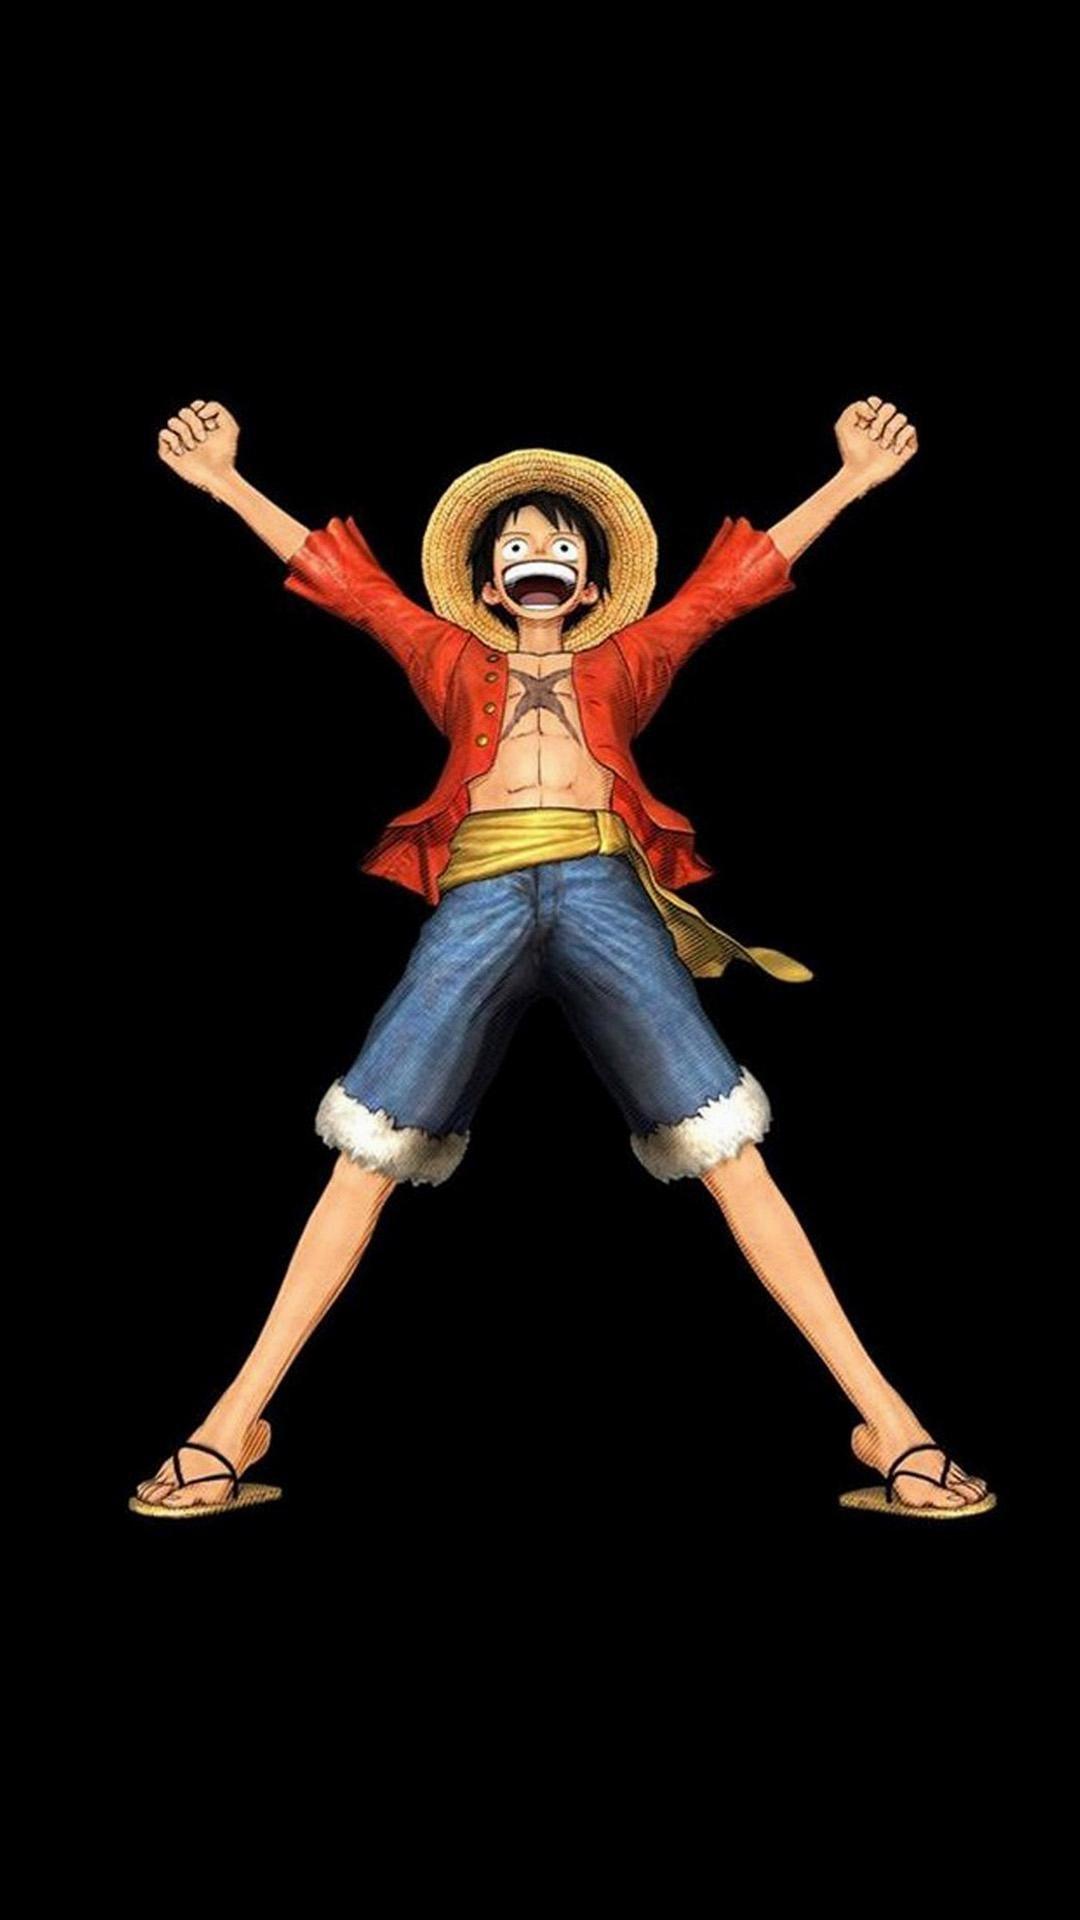 Cùng thưởng thức bộ sưu tập hình nền One Piece cho iPhone độc đáo và đầy tinh tế để mang đến cho chính mình một phong cách tuyệt vời. Hình ảnh sáng sủa, kết hợp với đường nét tinh tế sẽ giúp cho chiếc điện thoại của bạn trở nên thật nổi bật và độc đáo.